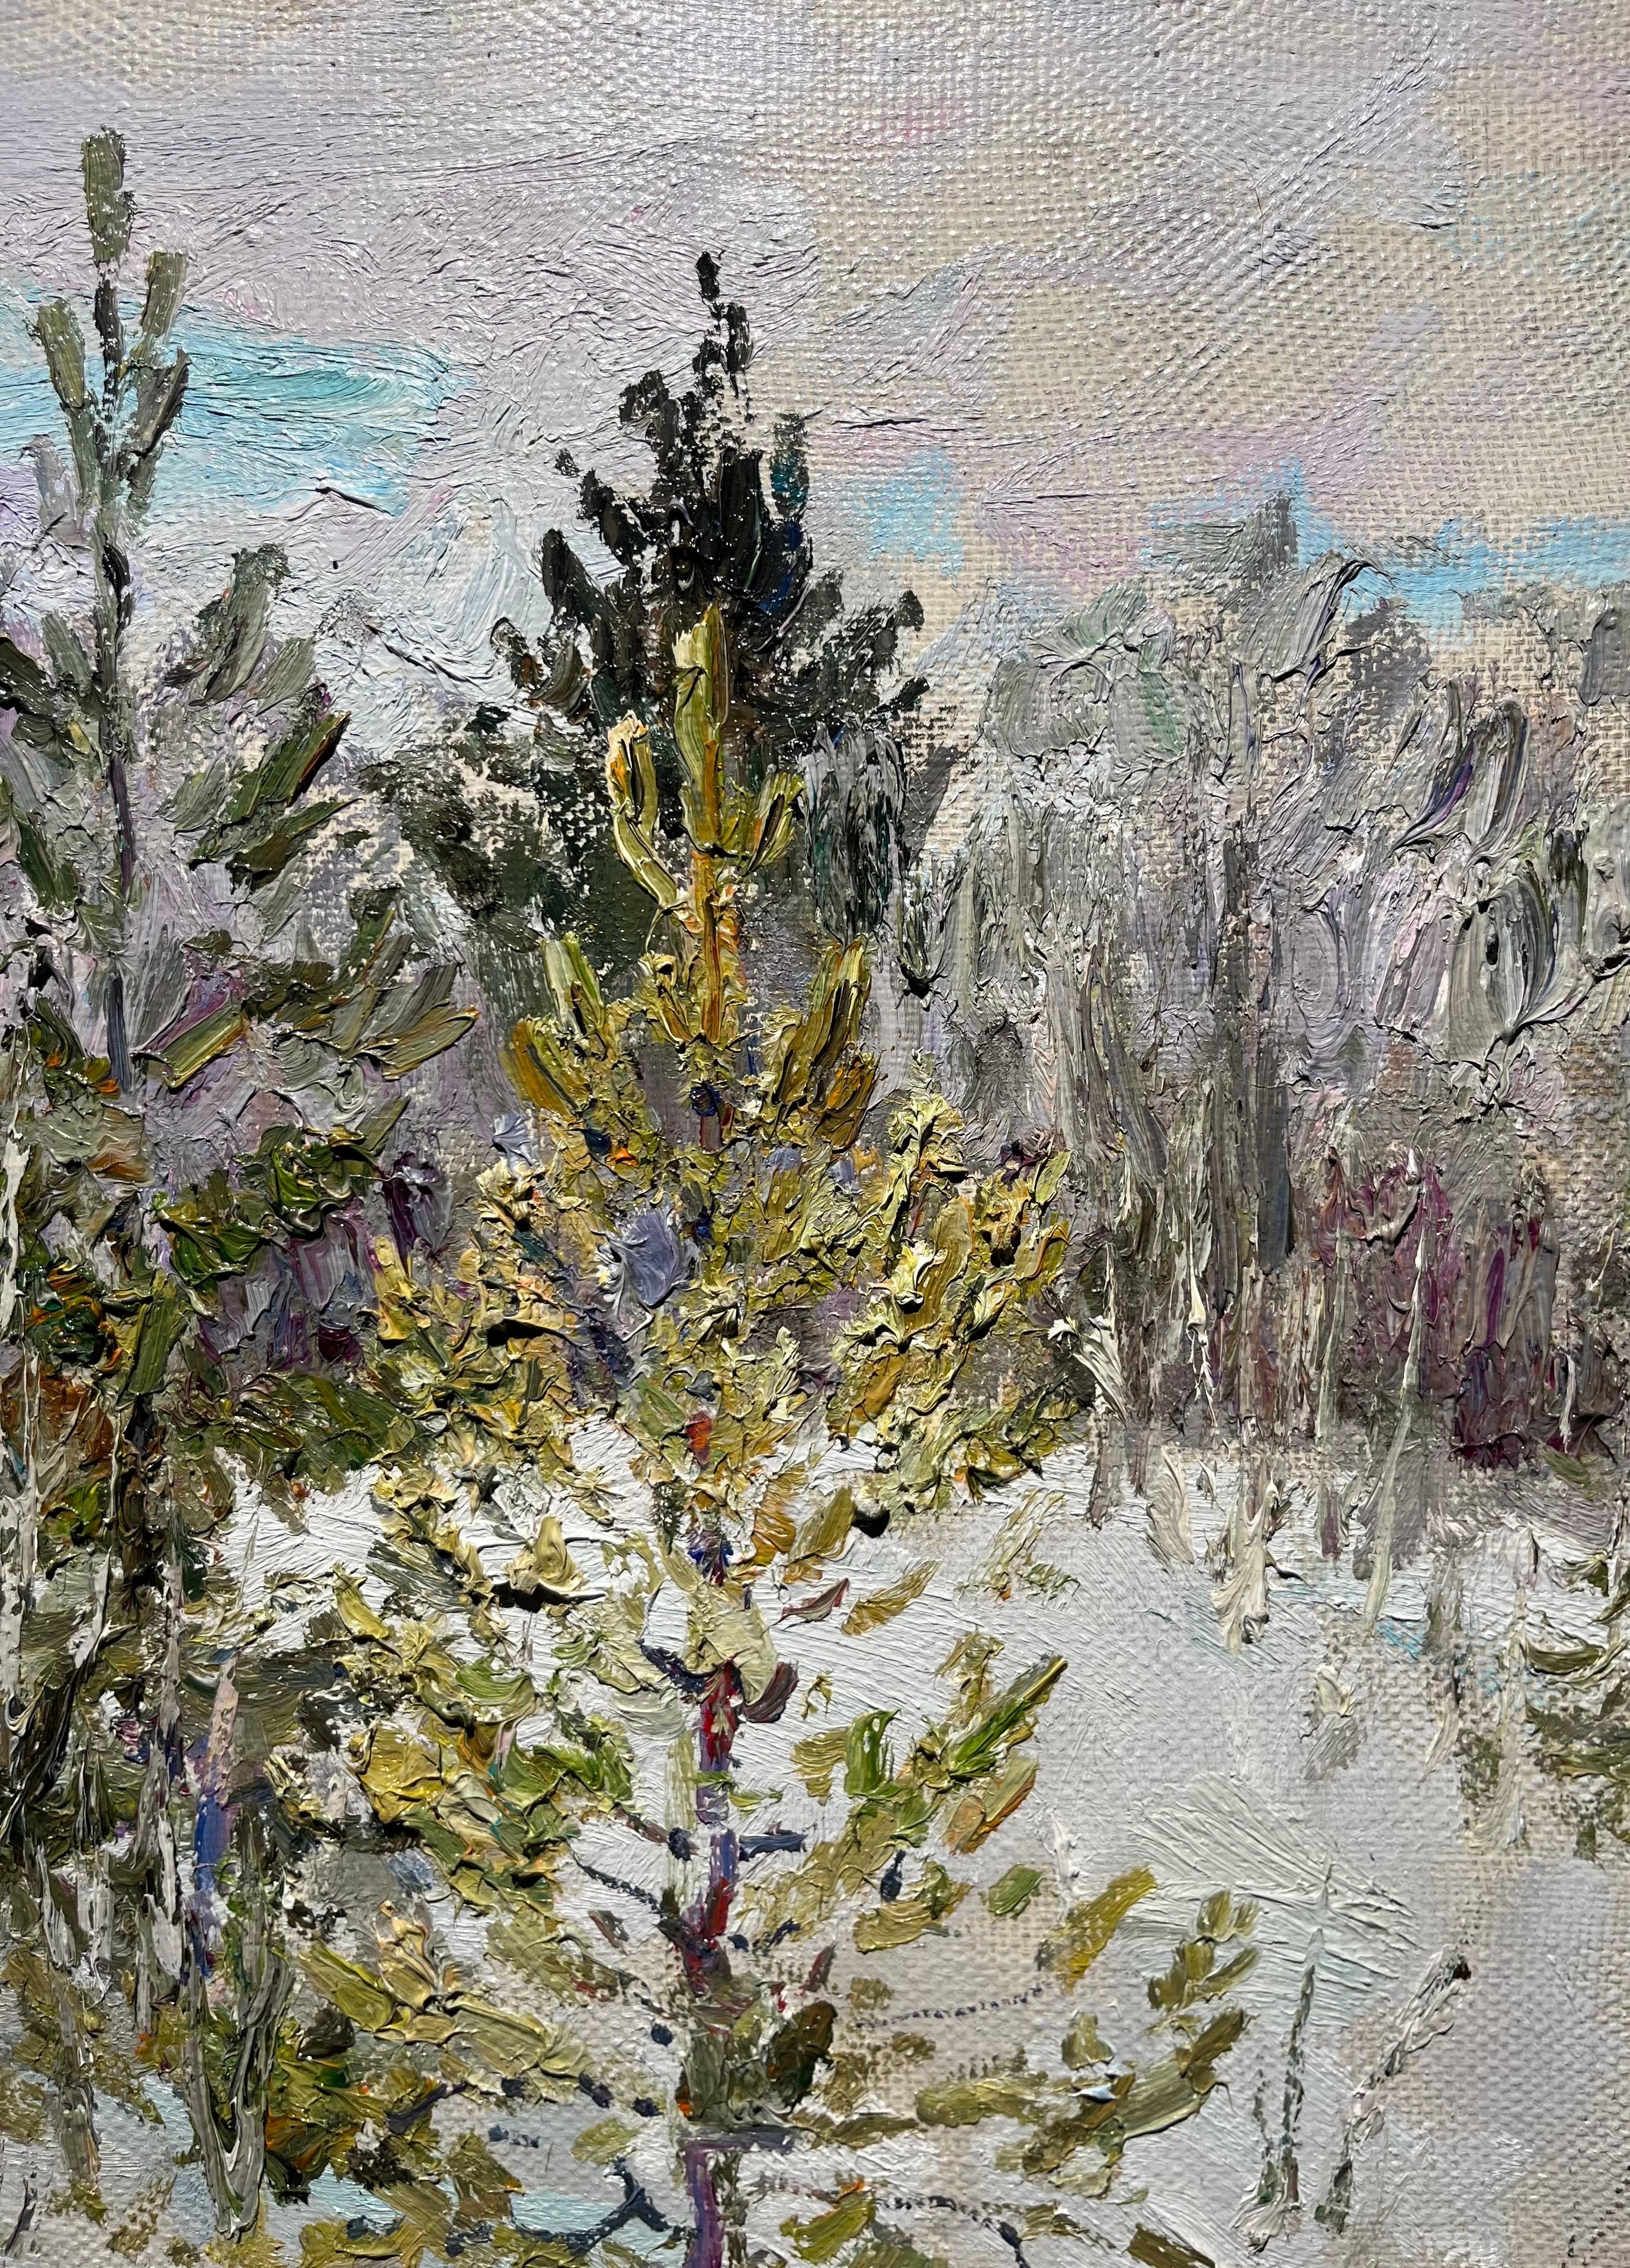 Opera luminosa.,
Paesaggio con la neve al limitare del bosco . 